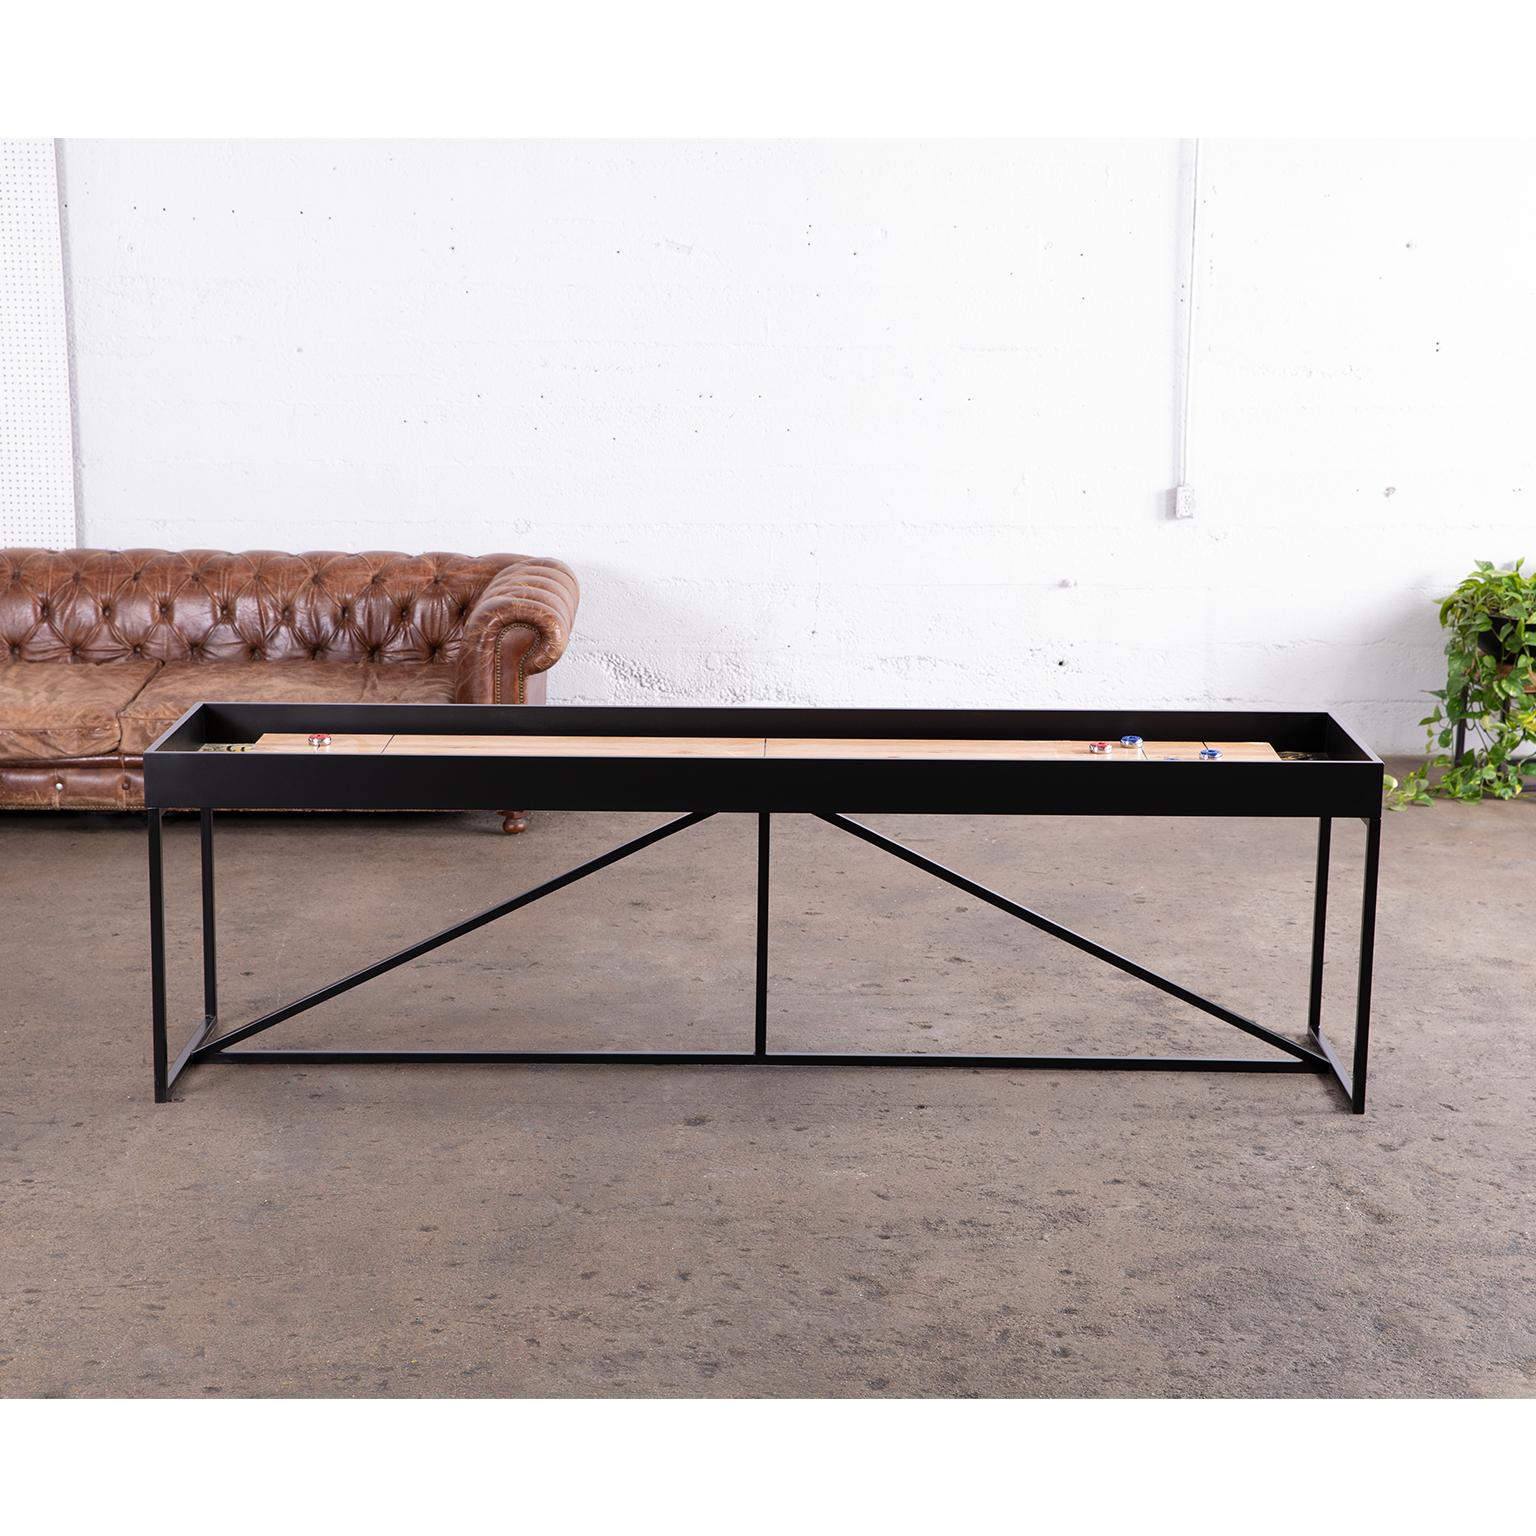 Laqué Table Shuffleboard moderne « The Break » de 12 pouces avec surface de jeu en chêne et cadre métallique en vente